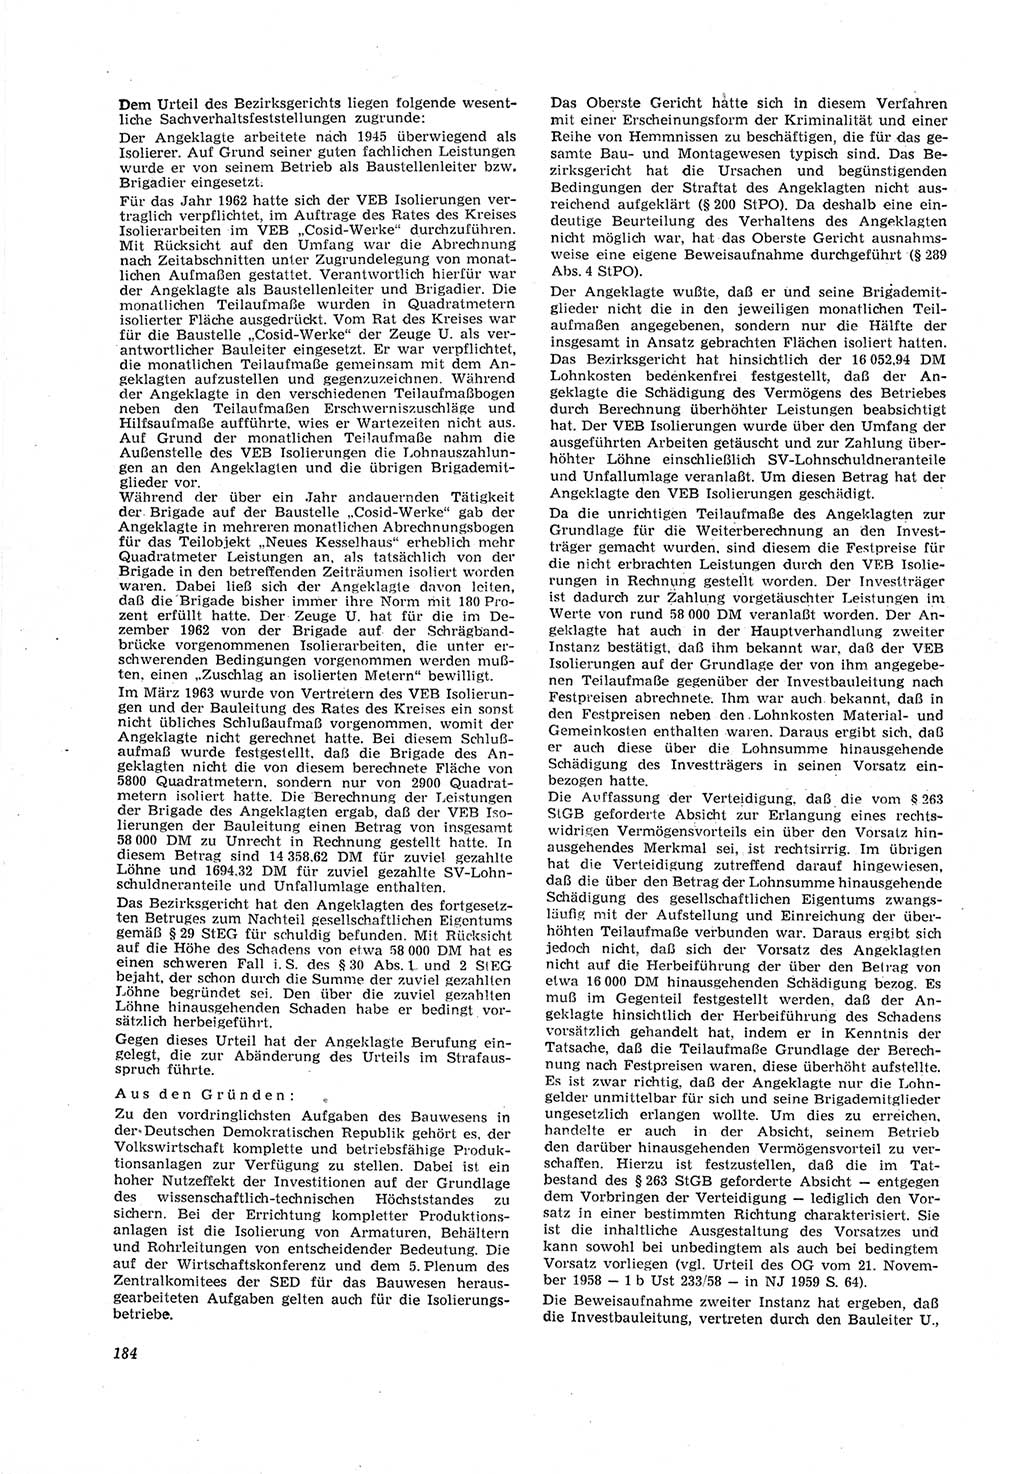 Neue Justiz (NJ), Zeitschrift für Recht und Rechtswissenschaft [Deutsche Demokratische Republik (DDR)], 18. Jahrgang 1964, Seite 184 (NJ DDR 1964, S. 184)